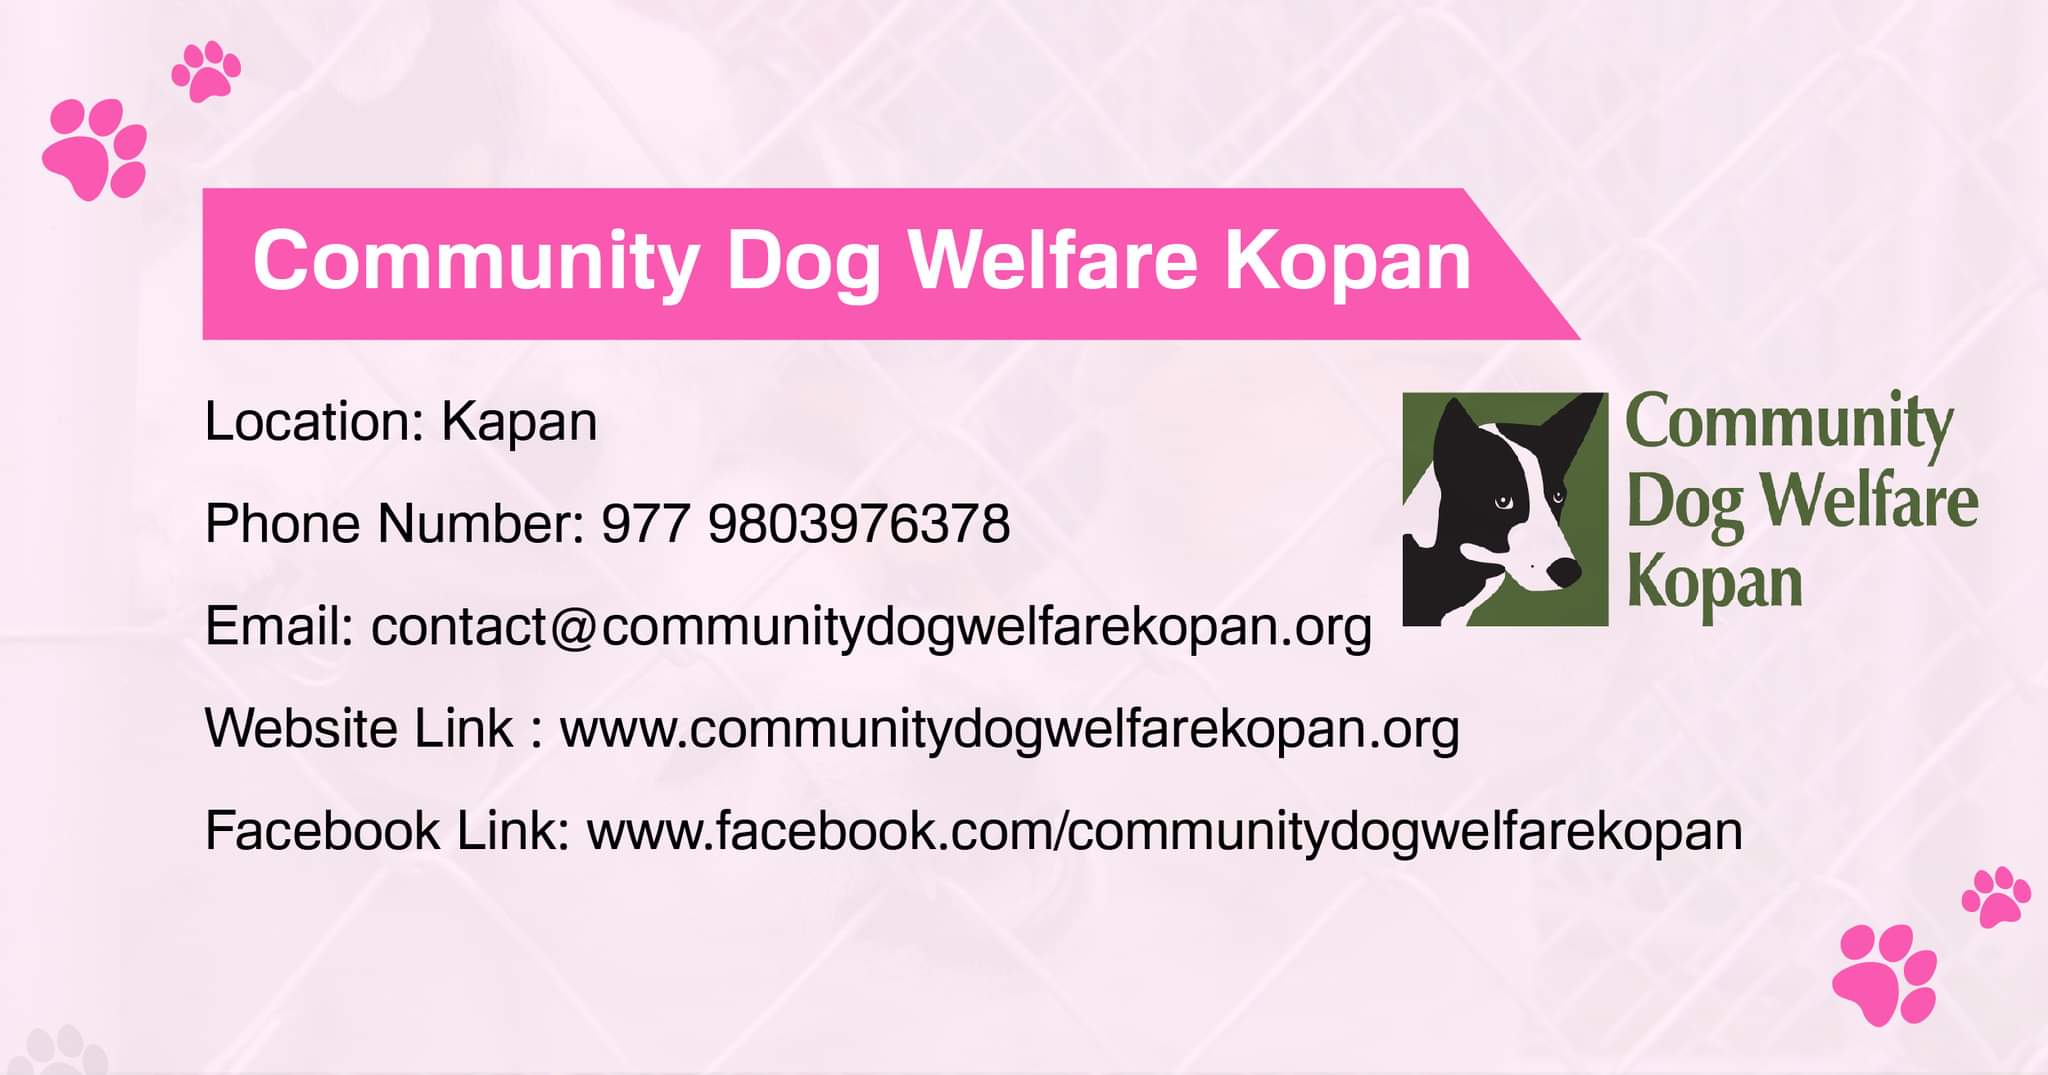 Community Dog Welfare Kopan dog adoption